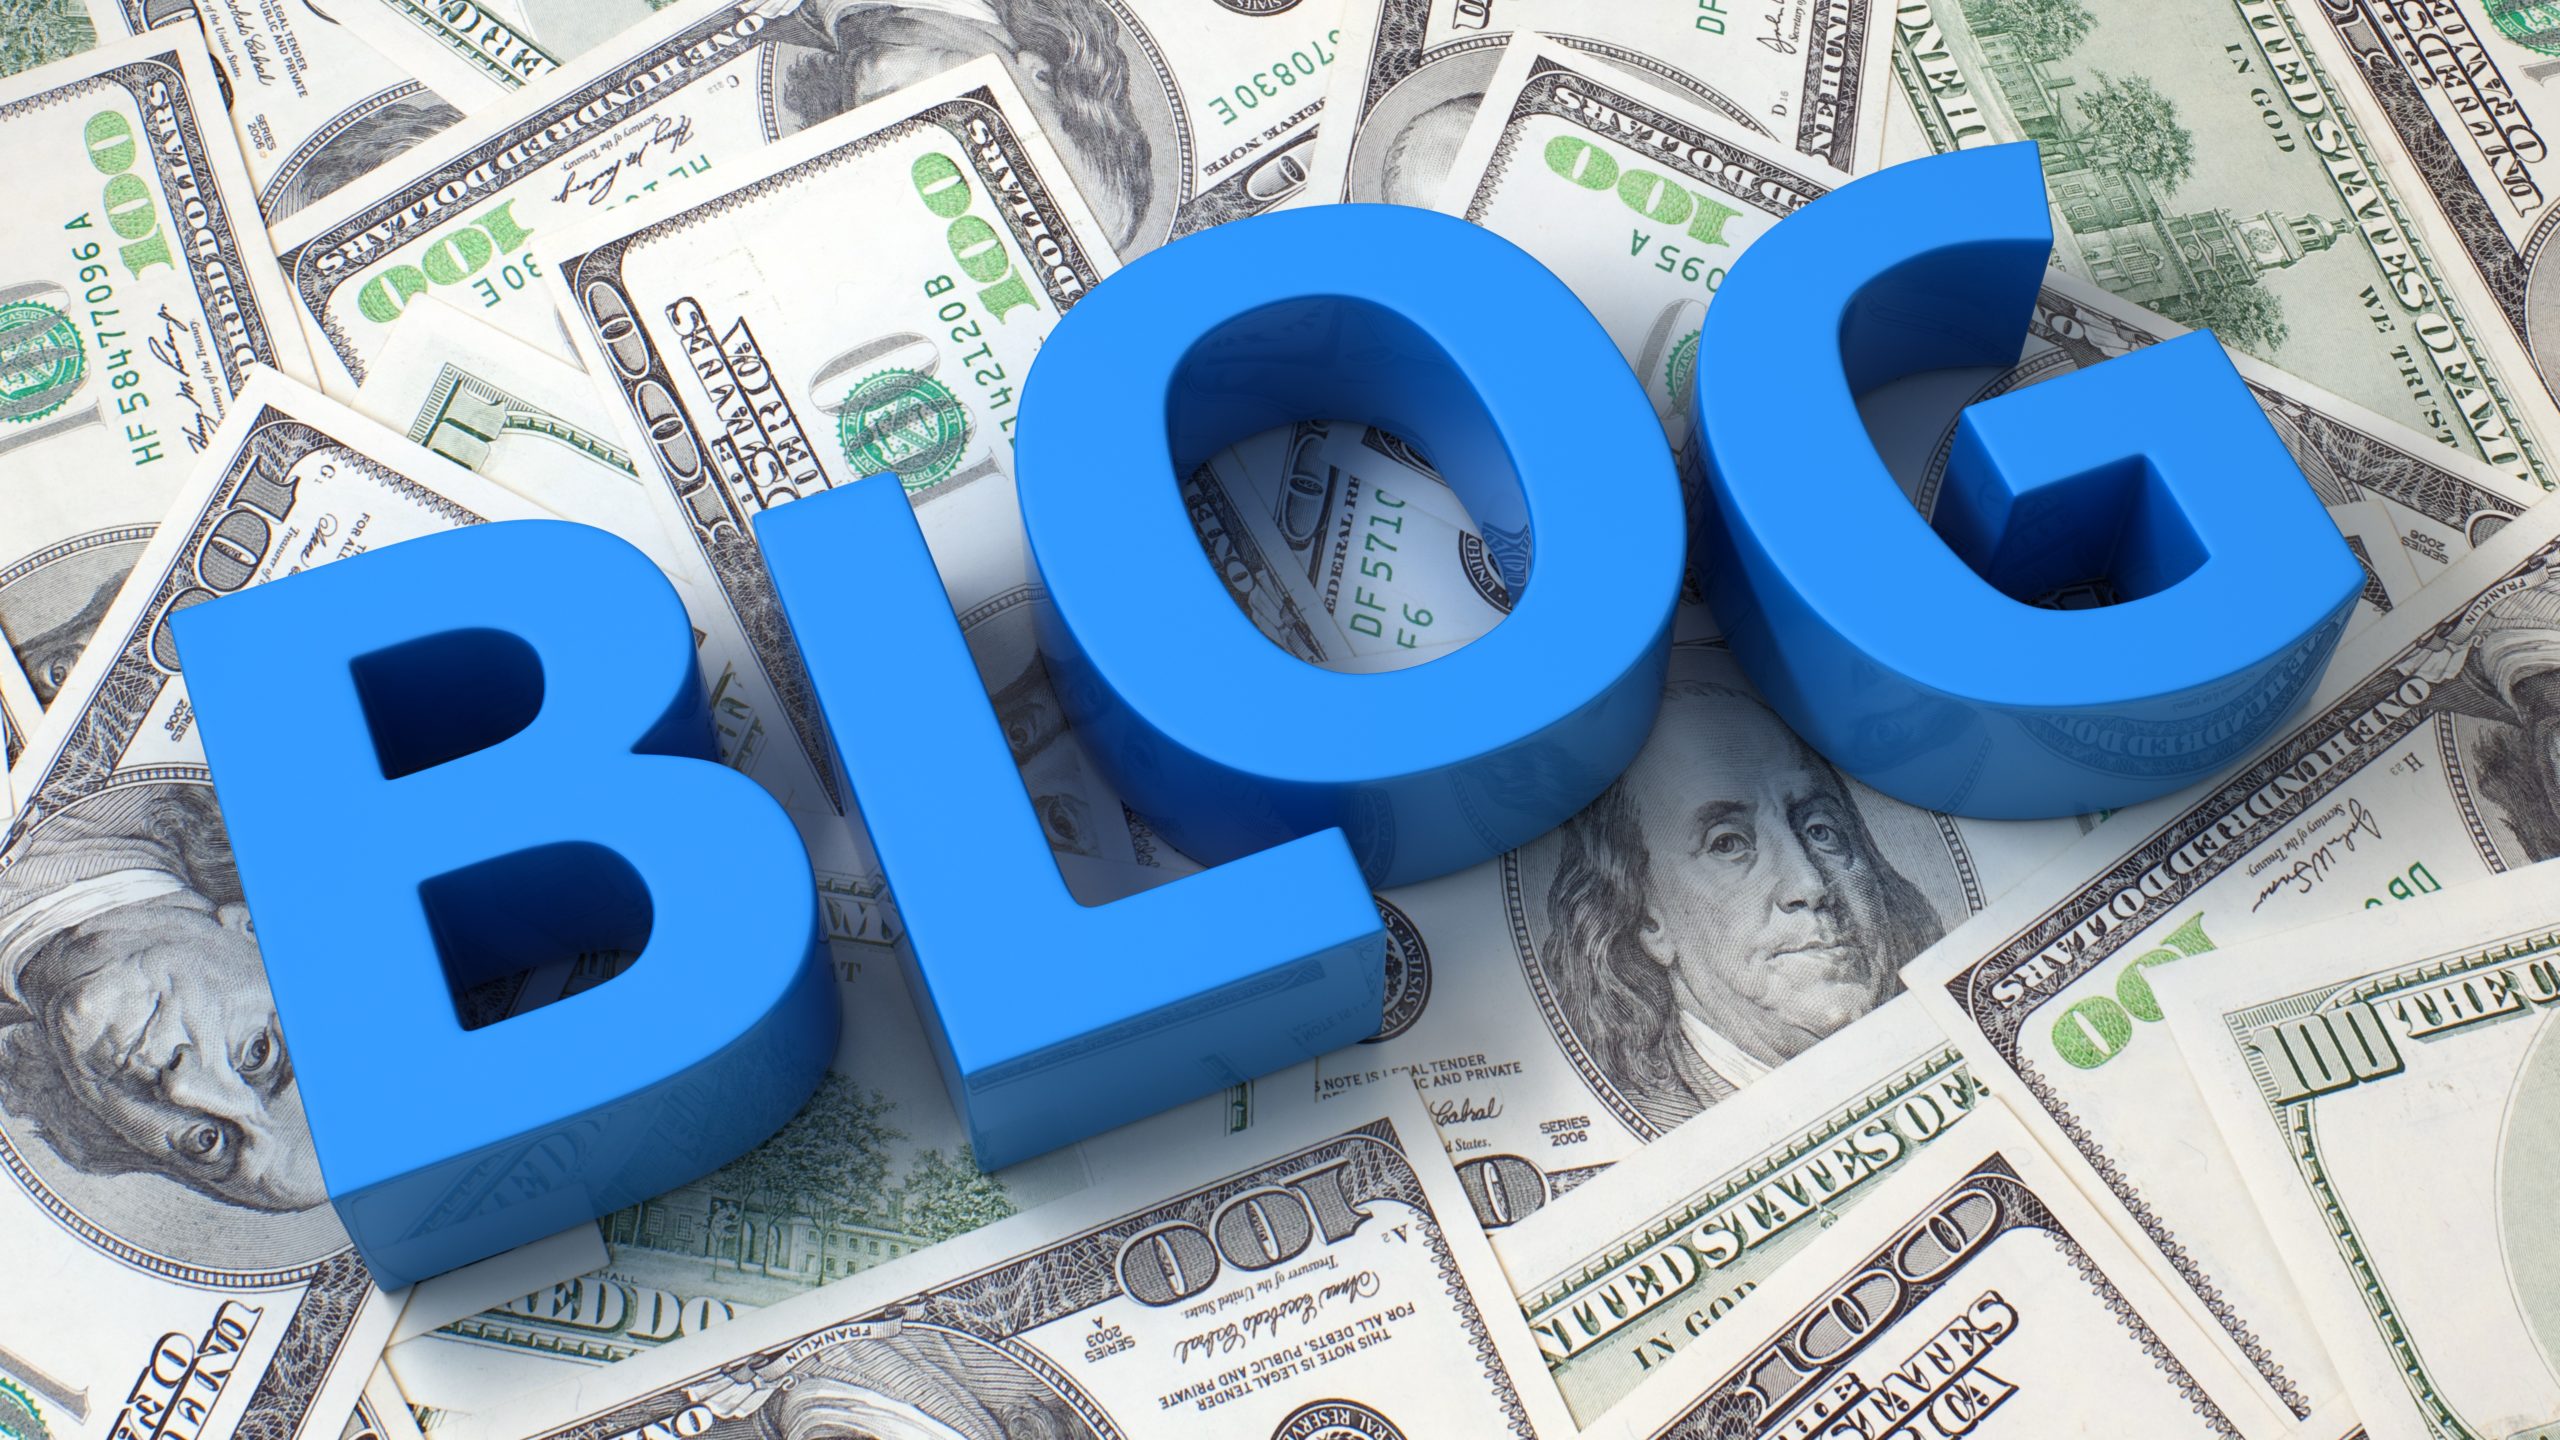 Каждый блог. Деньги. Монетизация блога. Зарабатывание денег на блоге. Заработок в интернете картинки.